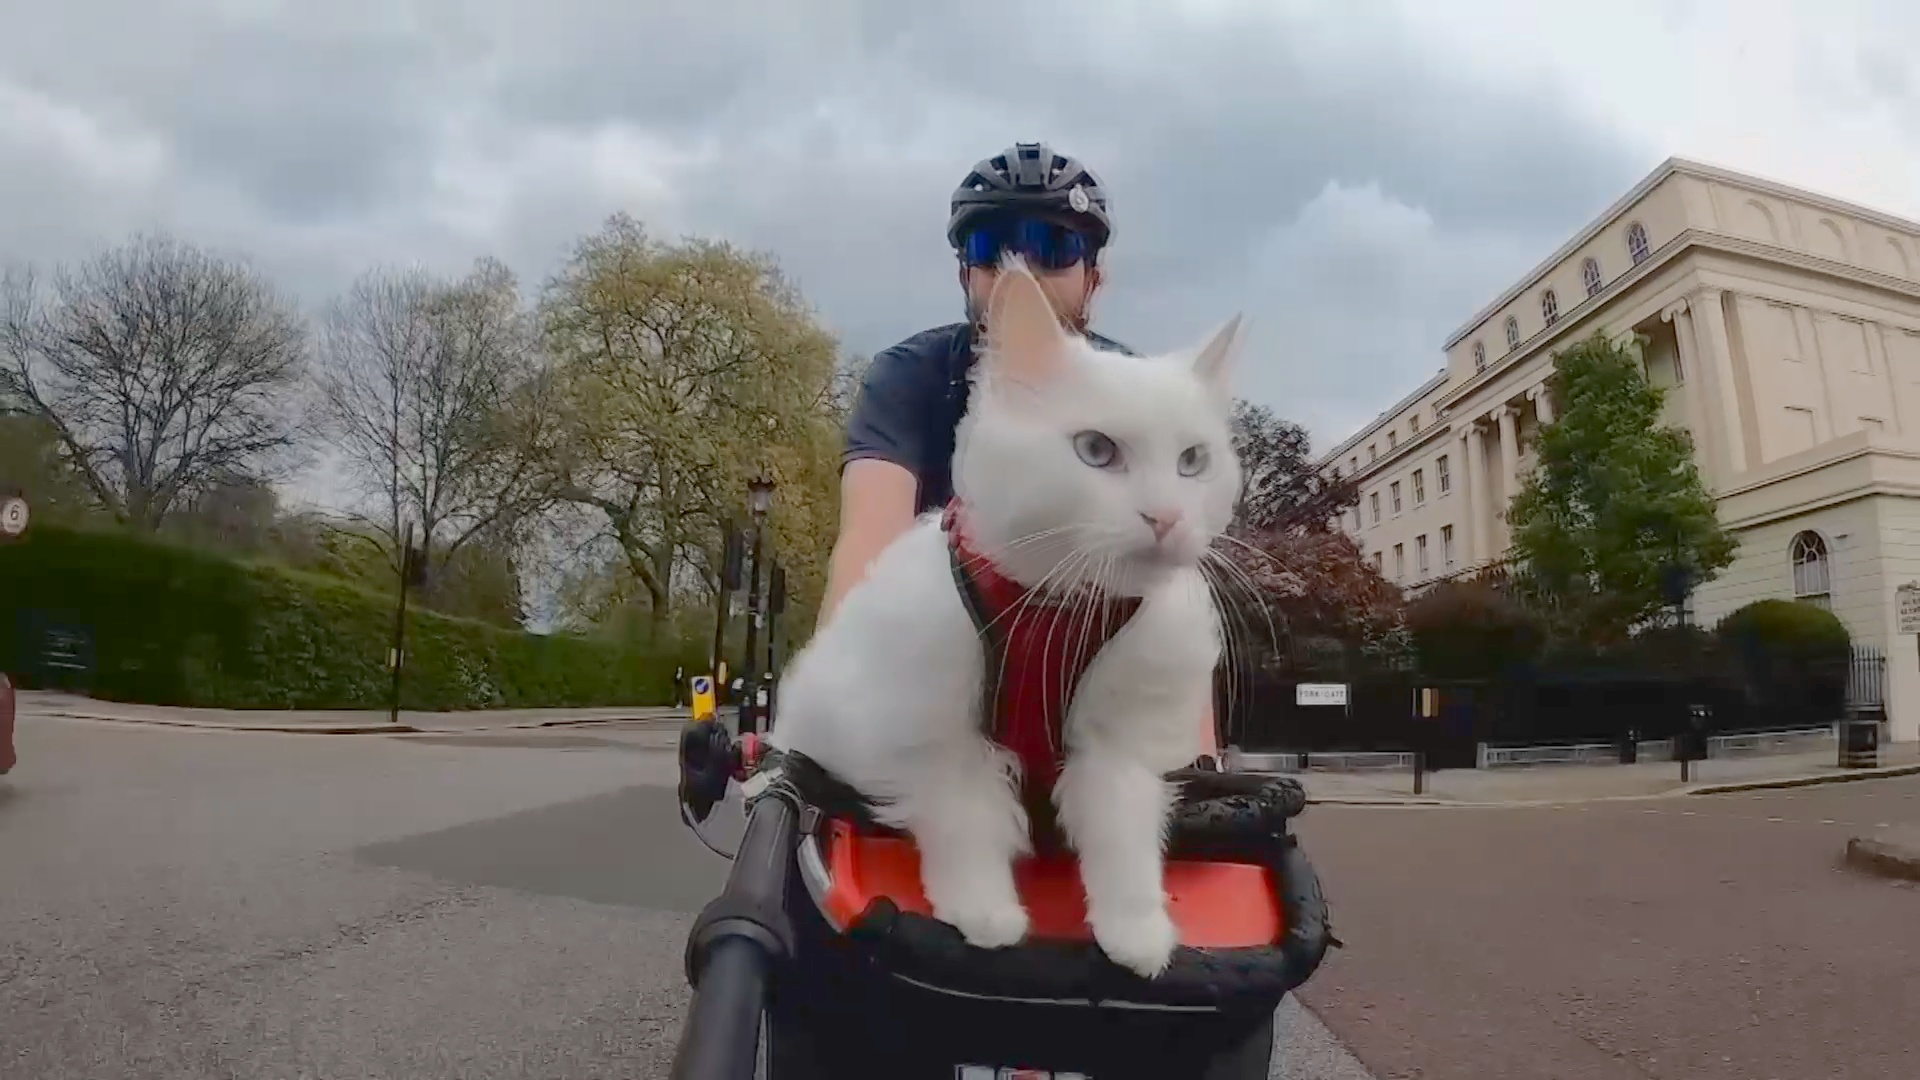 Кошка, которая гуляет на велосипеде, стала звездой Лондона и Интернета